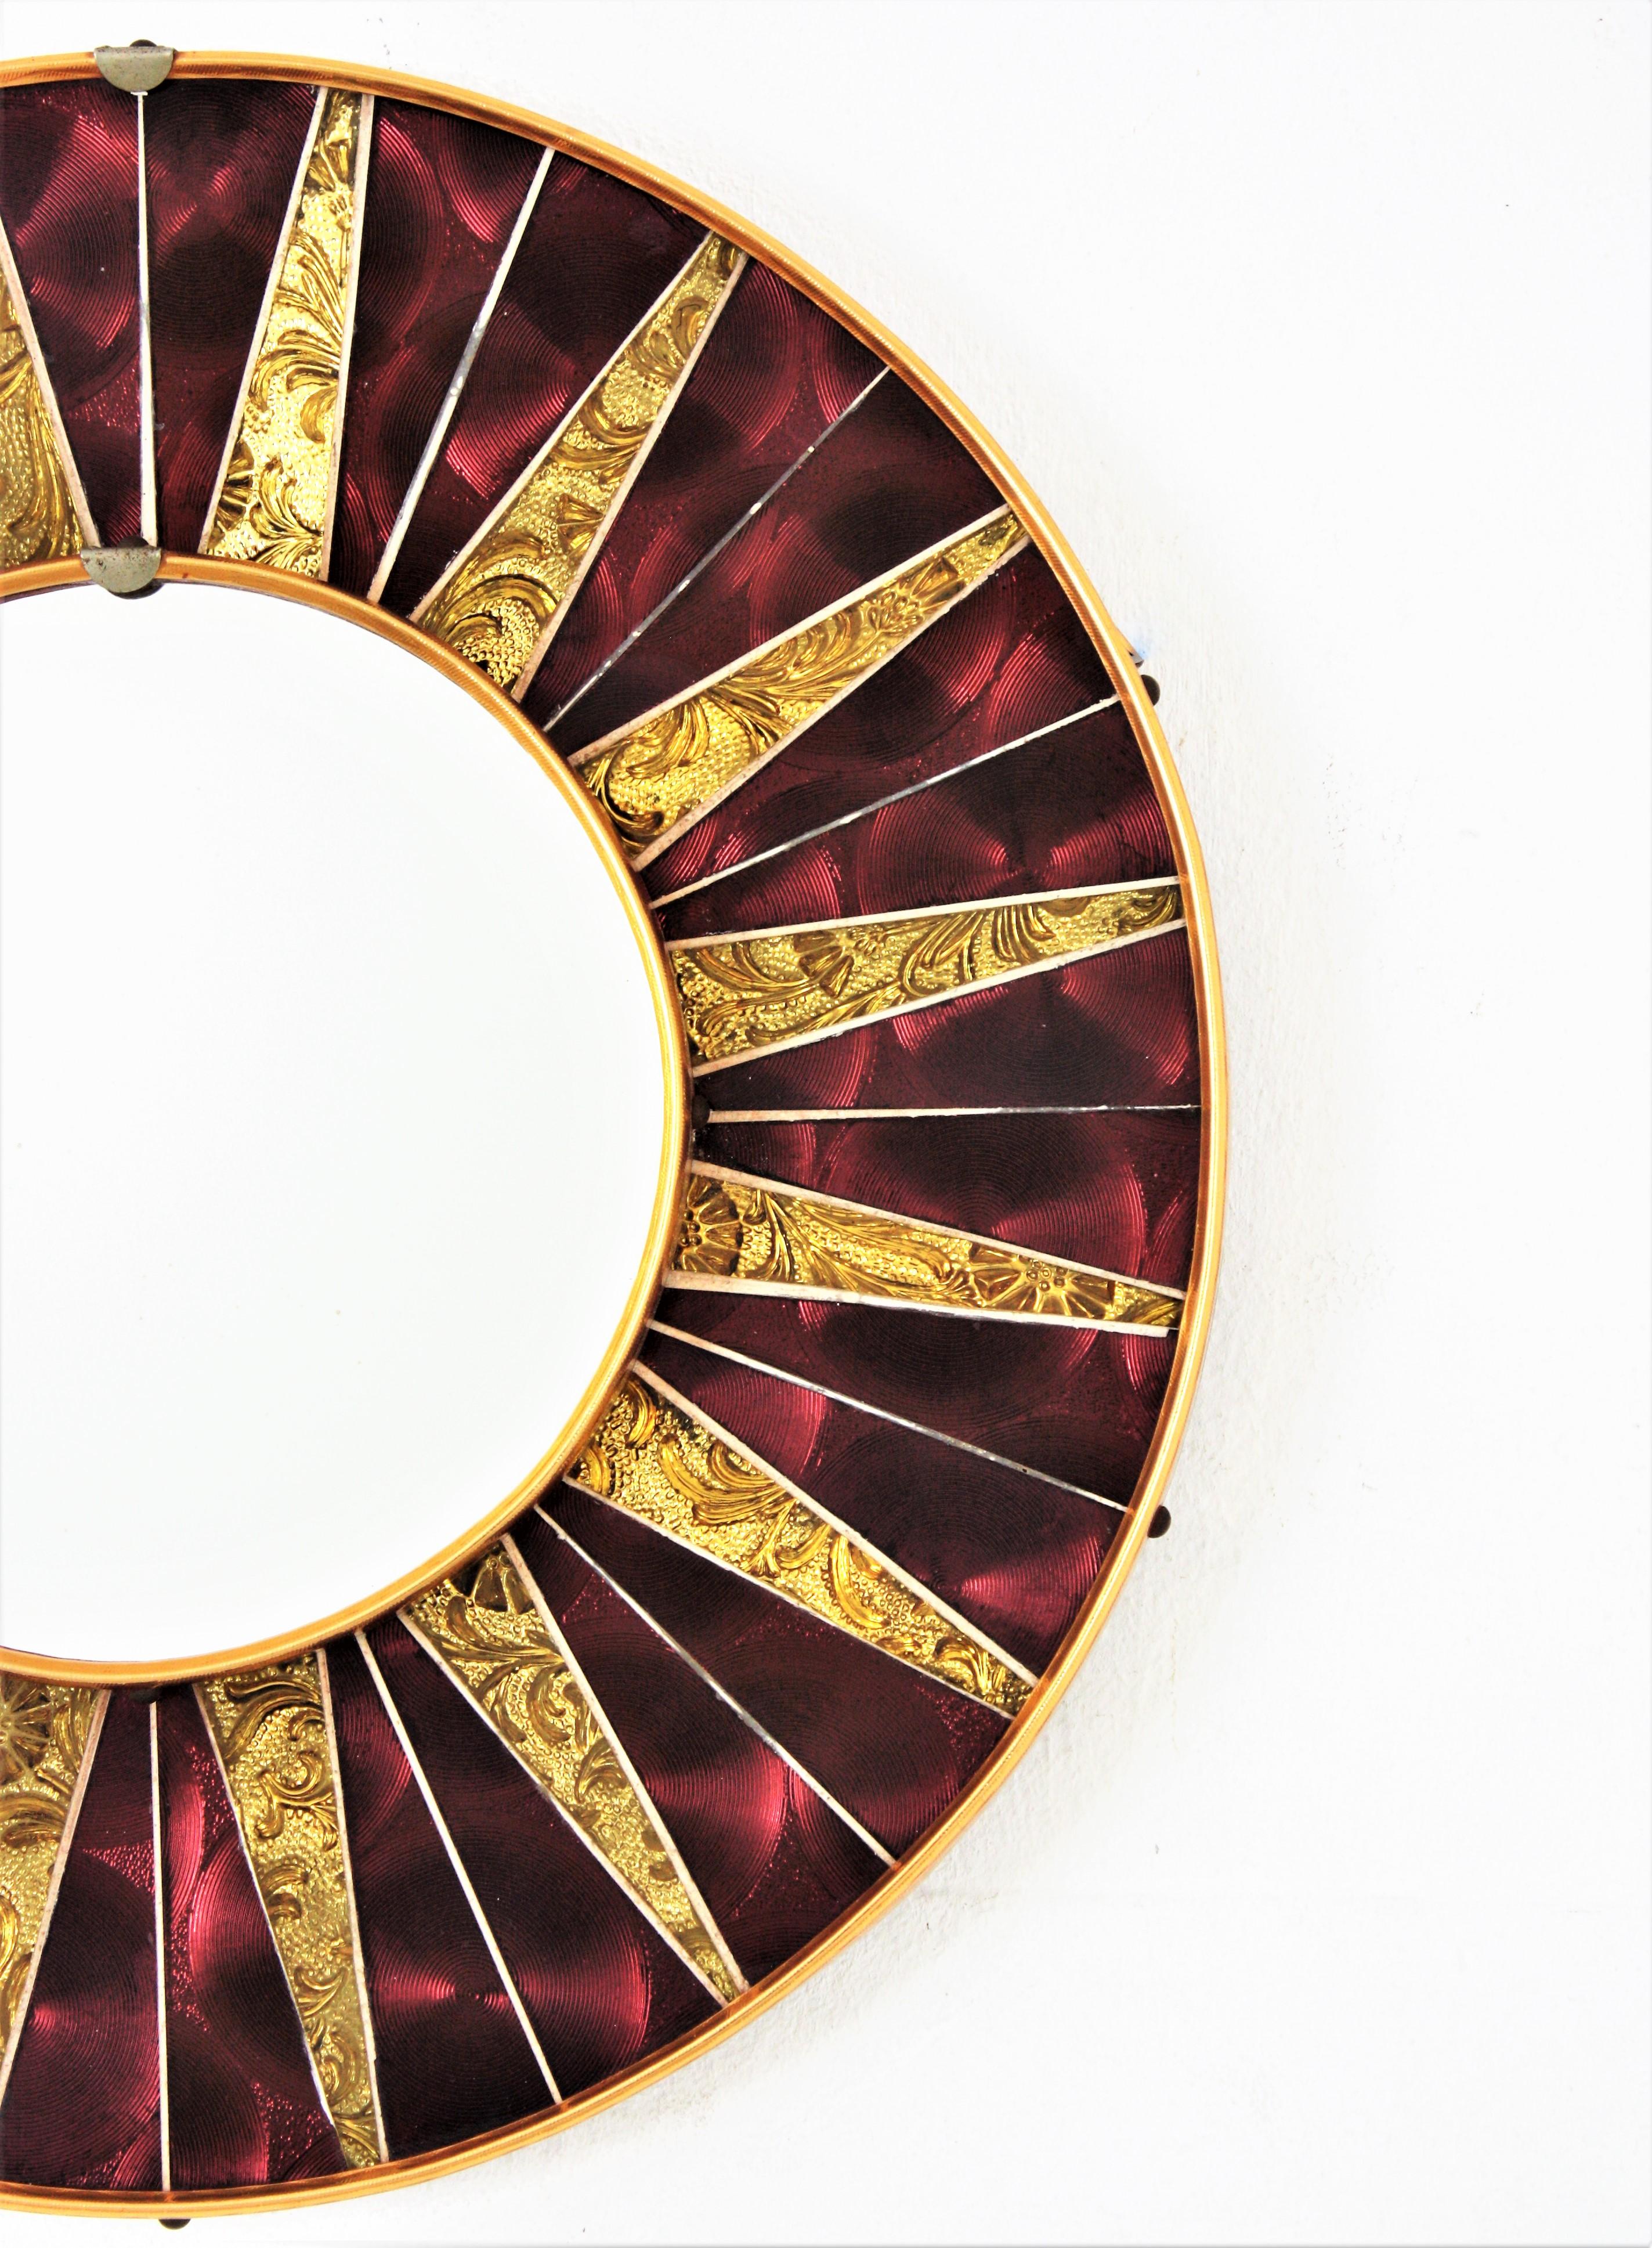 Sunburst Round Mirror with Garnet Golden Glass Mosaic Frame In Good Condition For Sale In Barcelona, ES